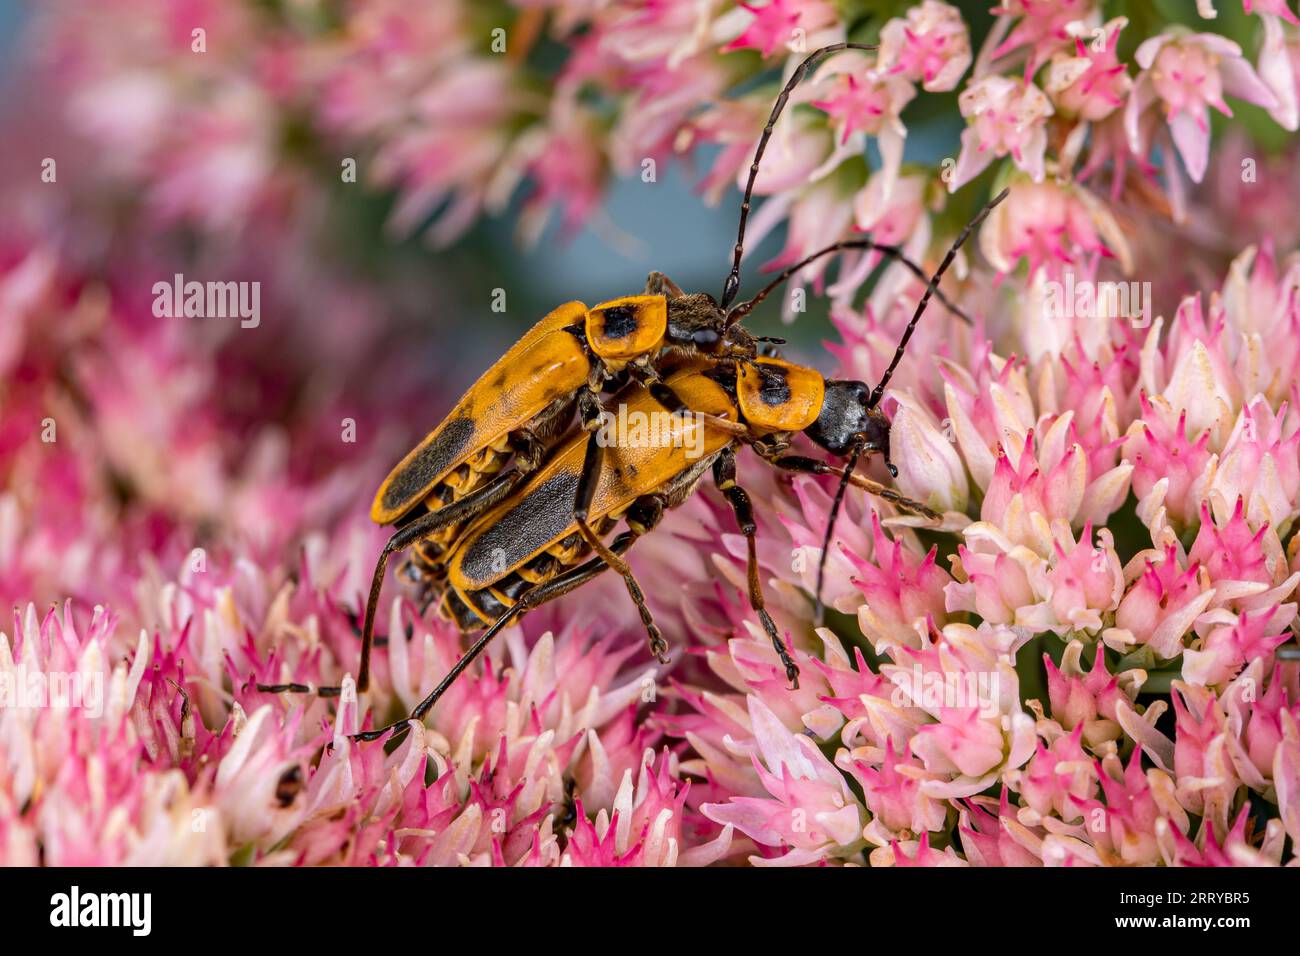 Pennsylvania Leatherwing, Goldenrod Soldier Beetle, Paarung auf Sedumblüten. Schutz von Insekten und Wildtieren, Erhaltung von Lebensräumen und Herde im Hinterhof Stockfoto